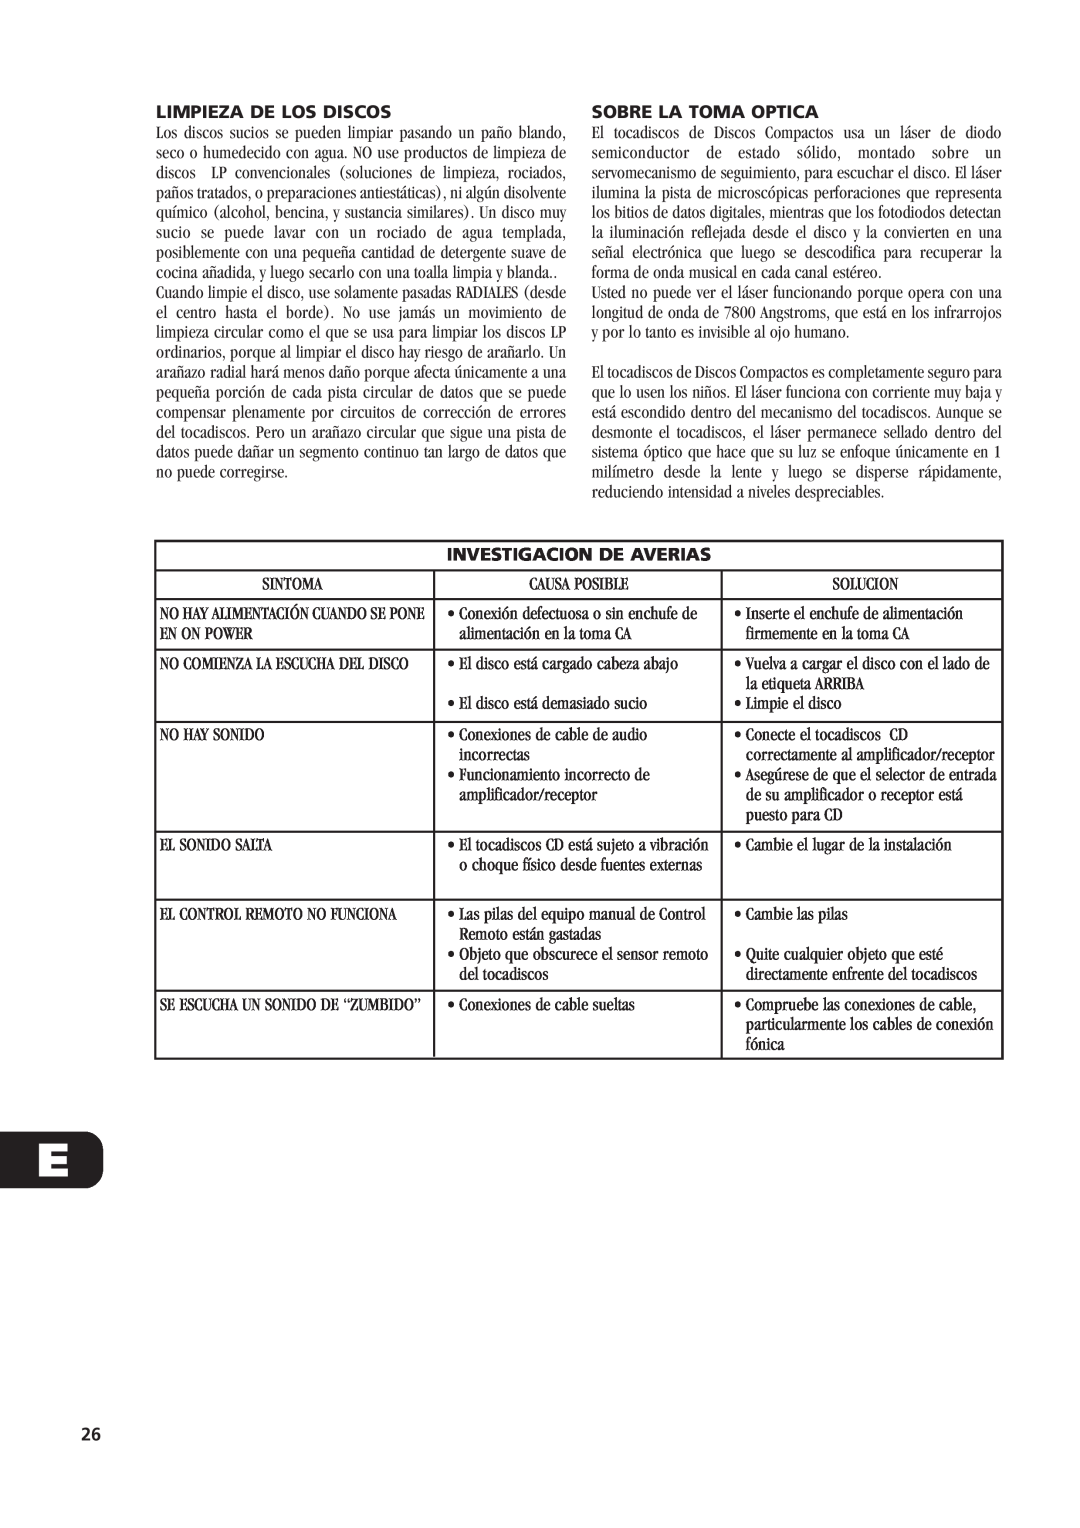 NAD C521 owner manual Limpieza De Los Discos, Sobre La Toma Optica, Investigacion De Averias 